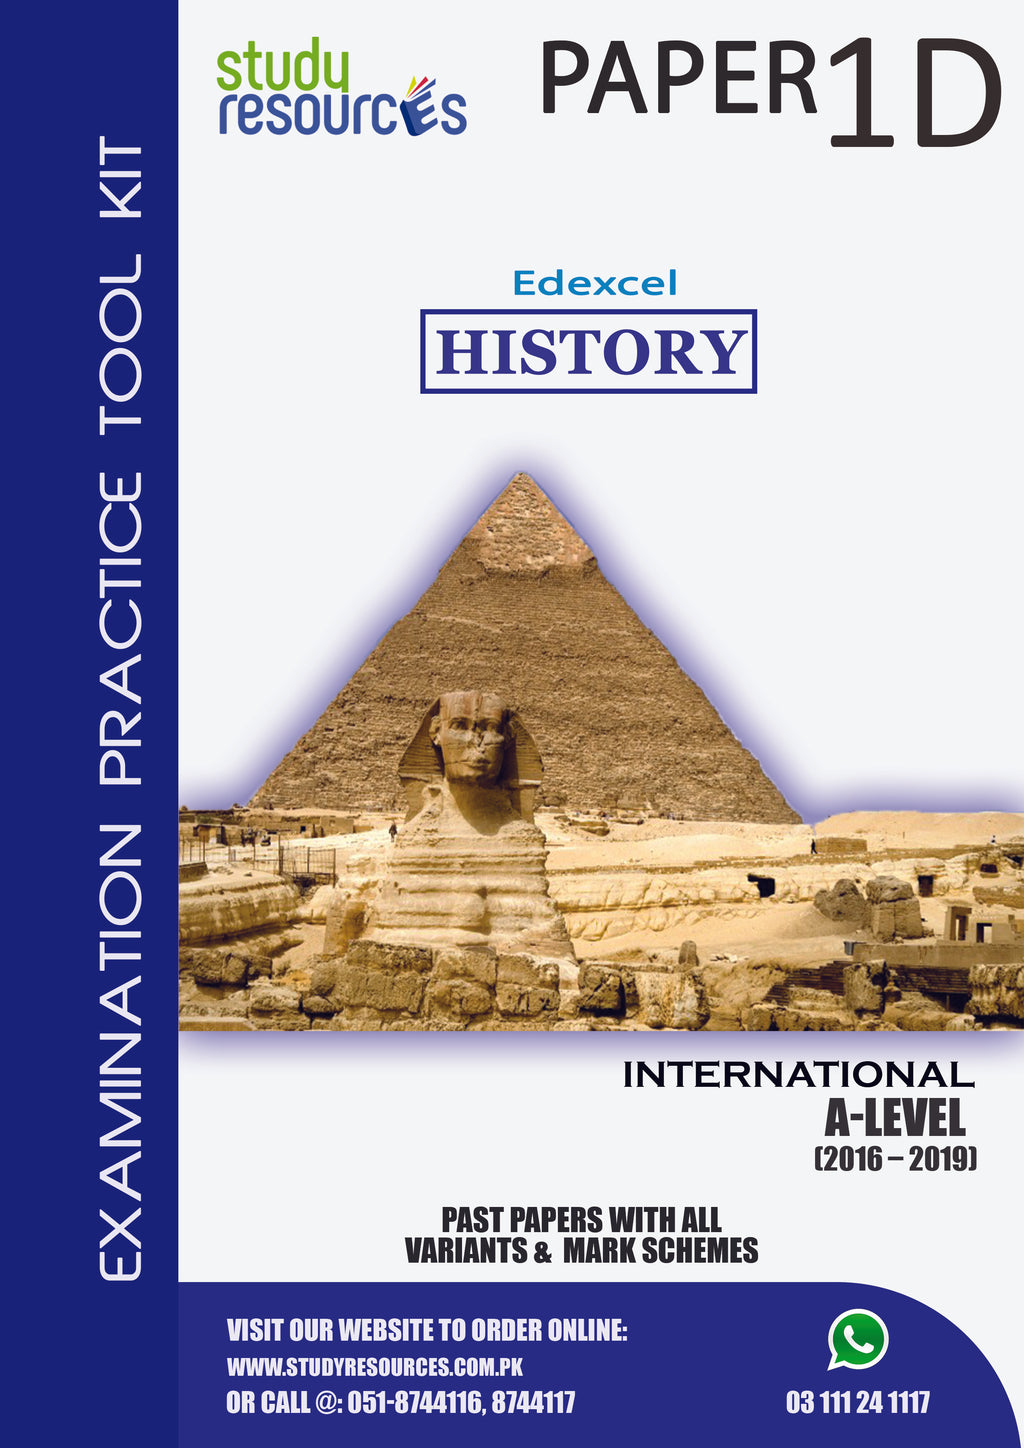 Edexcel A-Level History P-1D Past Papers (2016-2019)